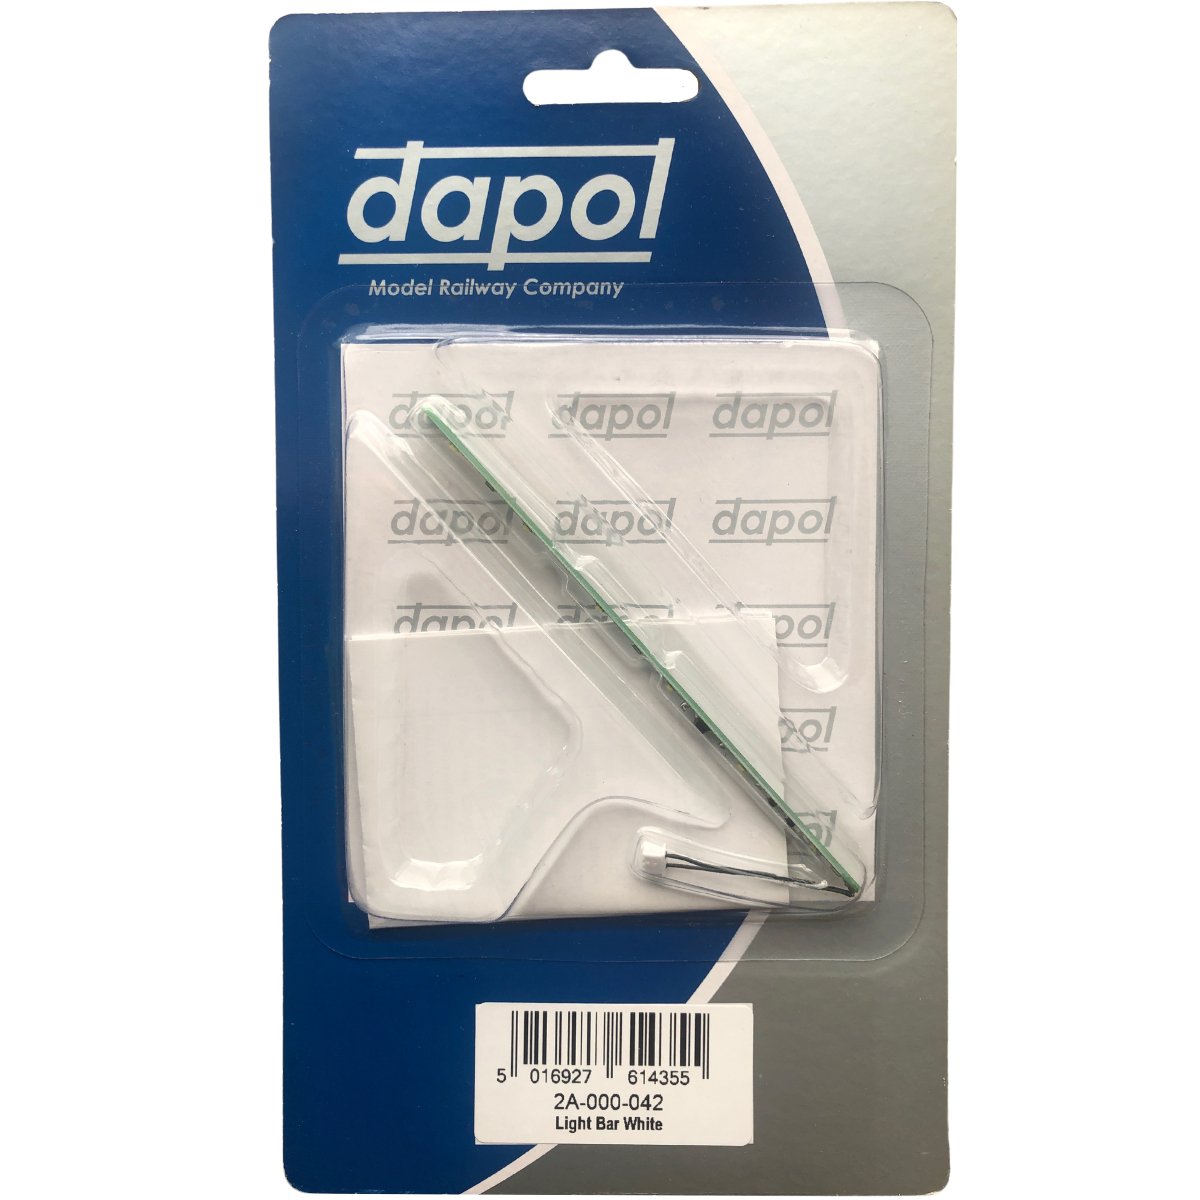 Dapol 2A-000-042 N Gauge Light Bar White Modern LED - Phillips Hobbies